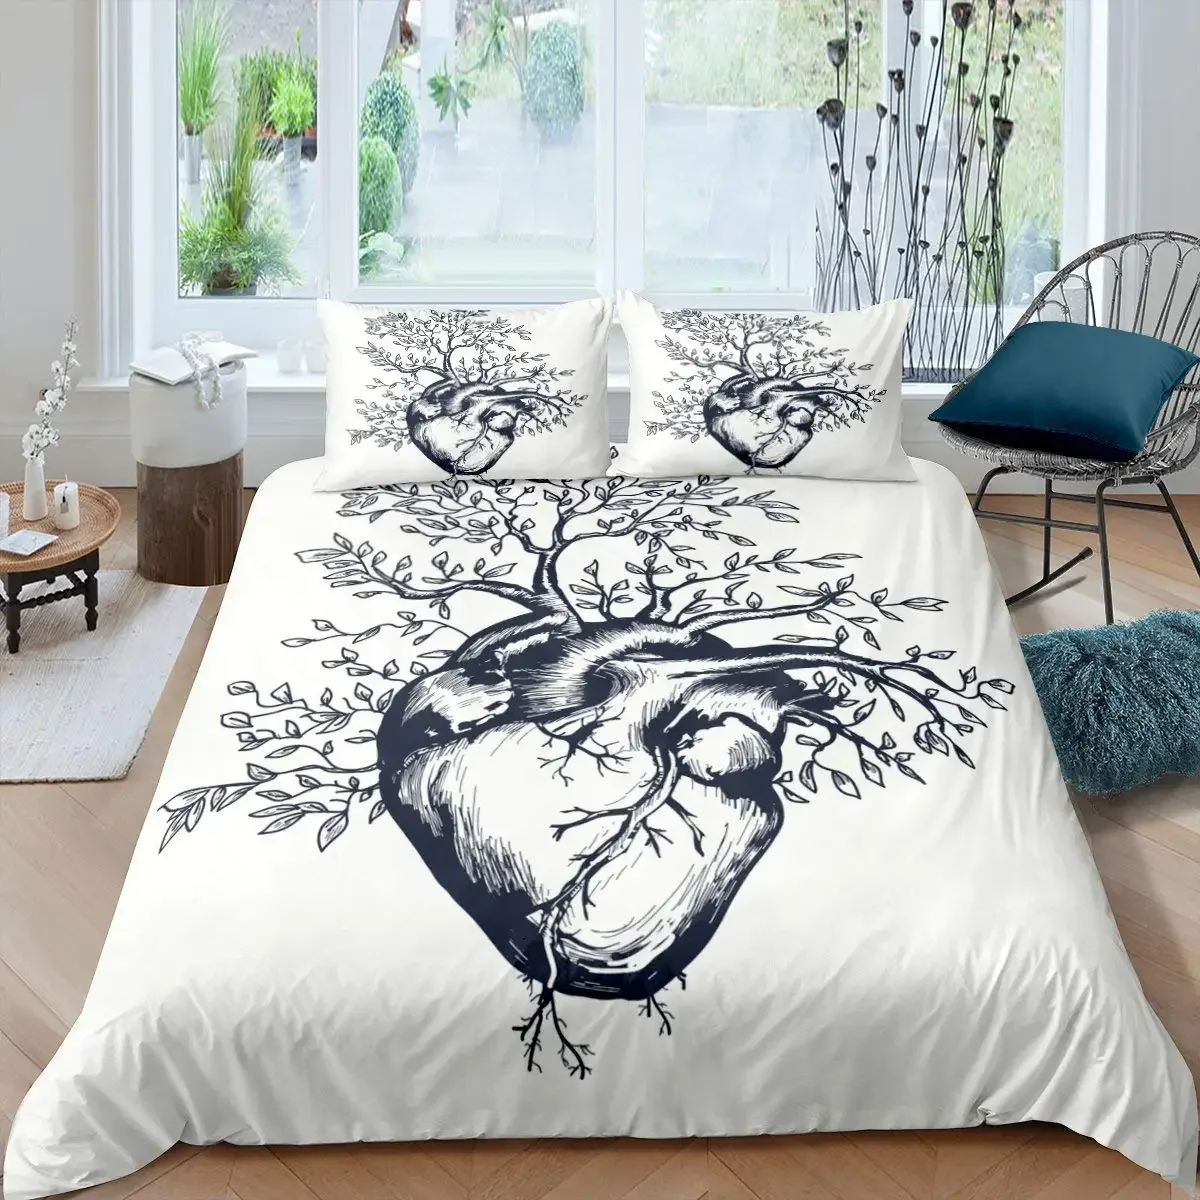 Комплект постельного белья с рисунком Древо жизни - Фото №1